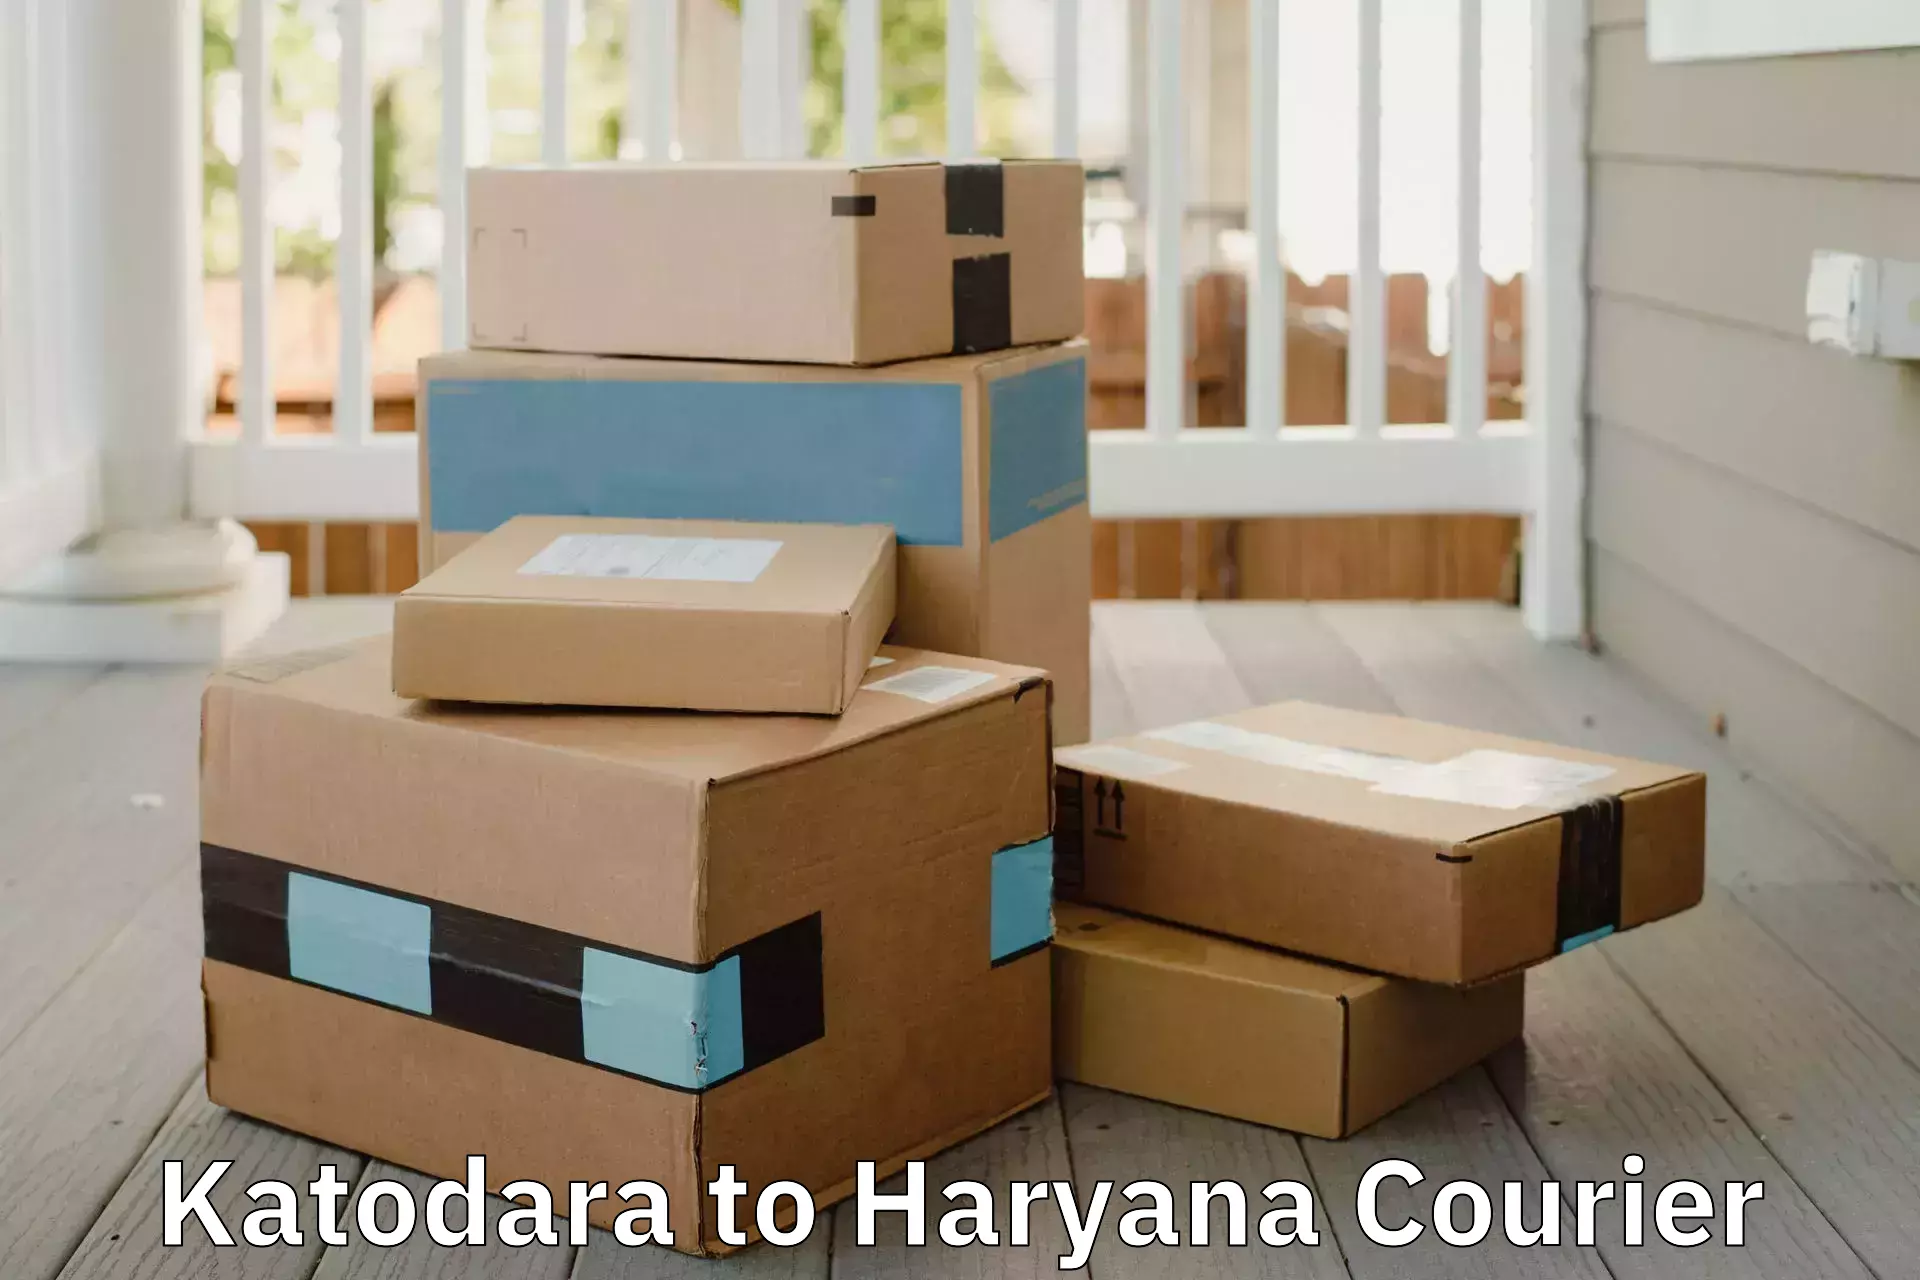 Trusted moving company Katodara to Haryana